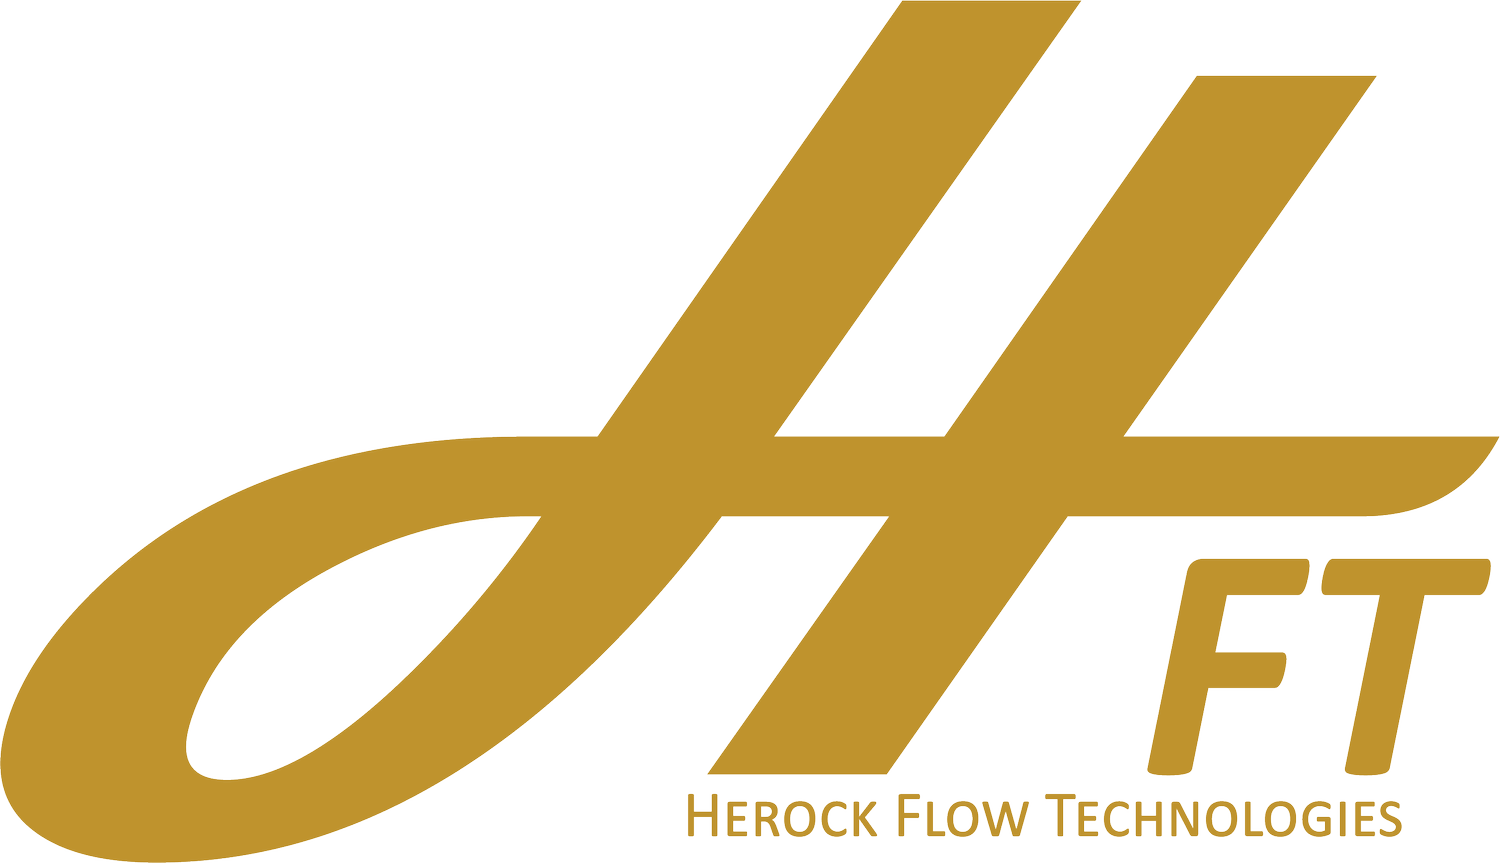 Welcome to HEROCK Flow Technologies